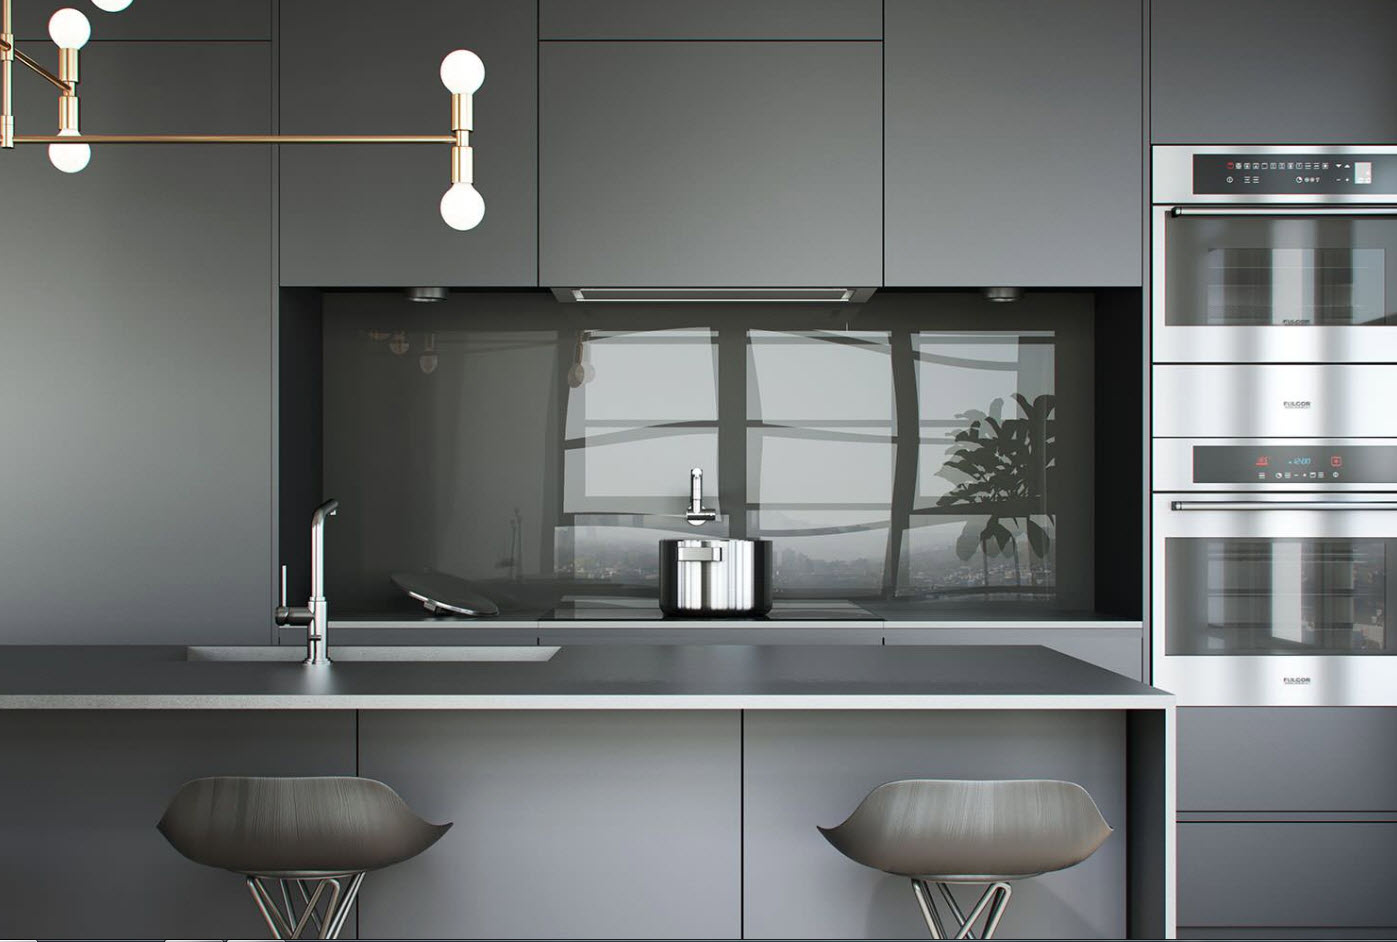 Кухня площадью 9 кв. м – дизайн 2017 года